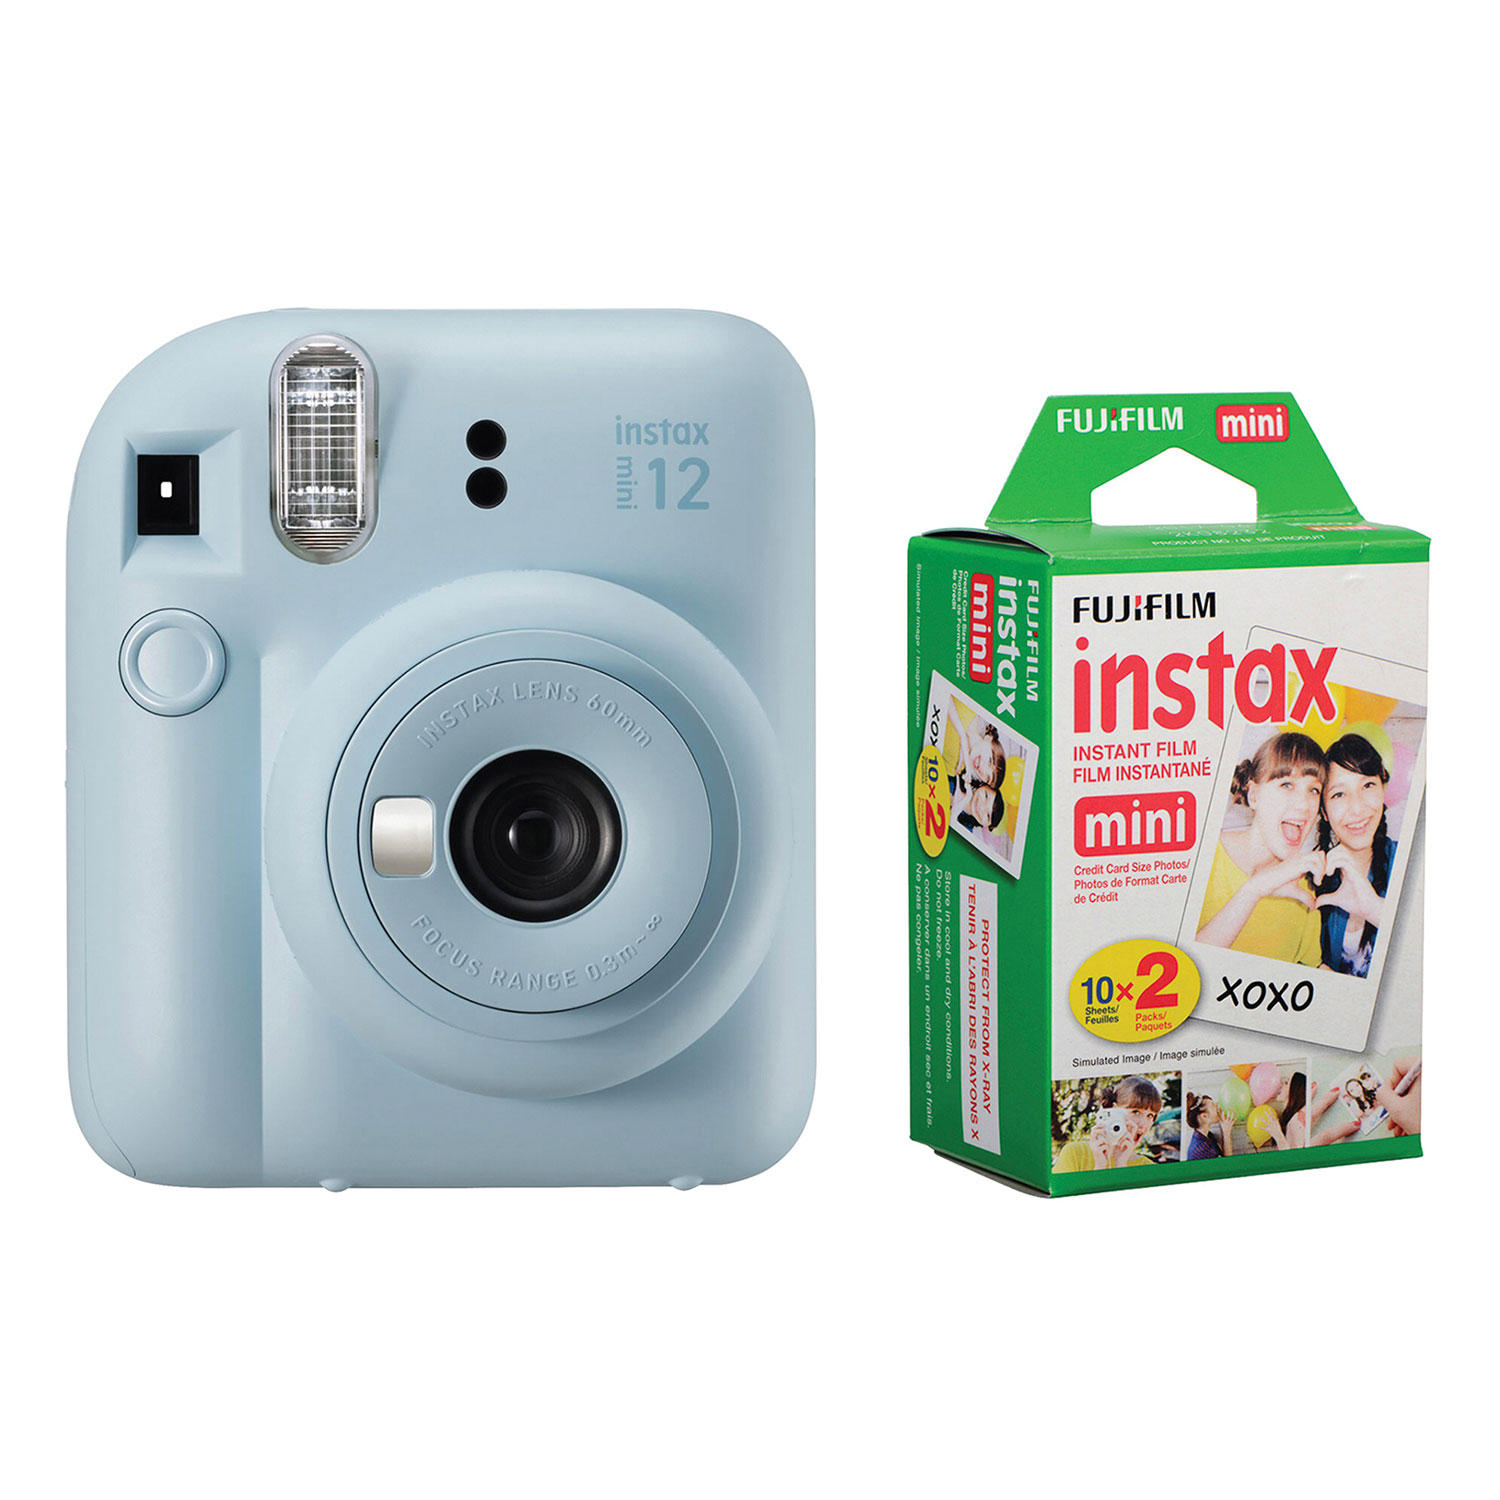 FUJIFILM Instax Mini 12 Instant Film Camera (Pastel Blue) & Instax mini Film Twin Pack